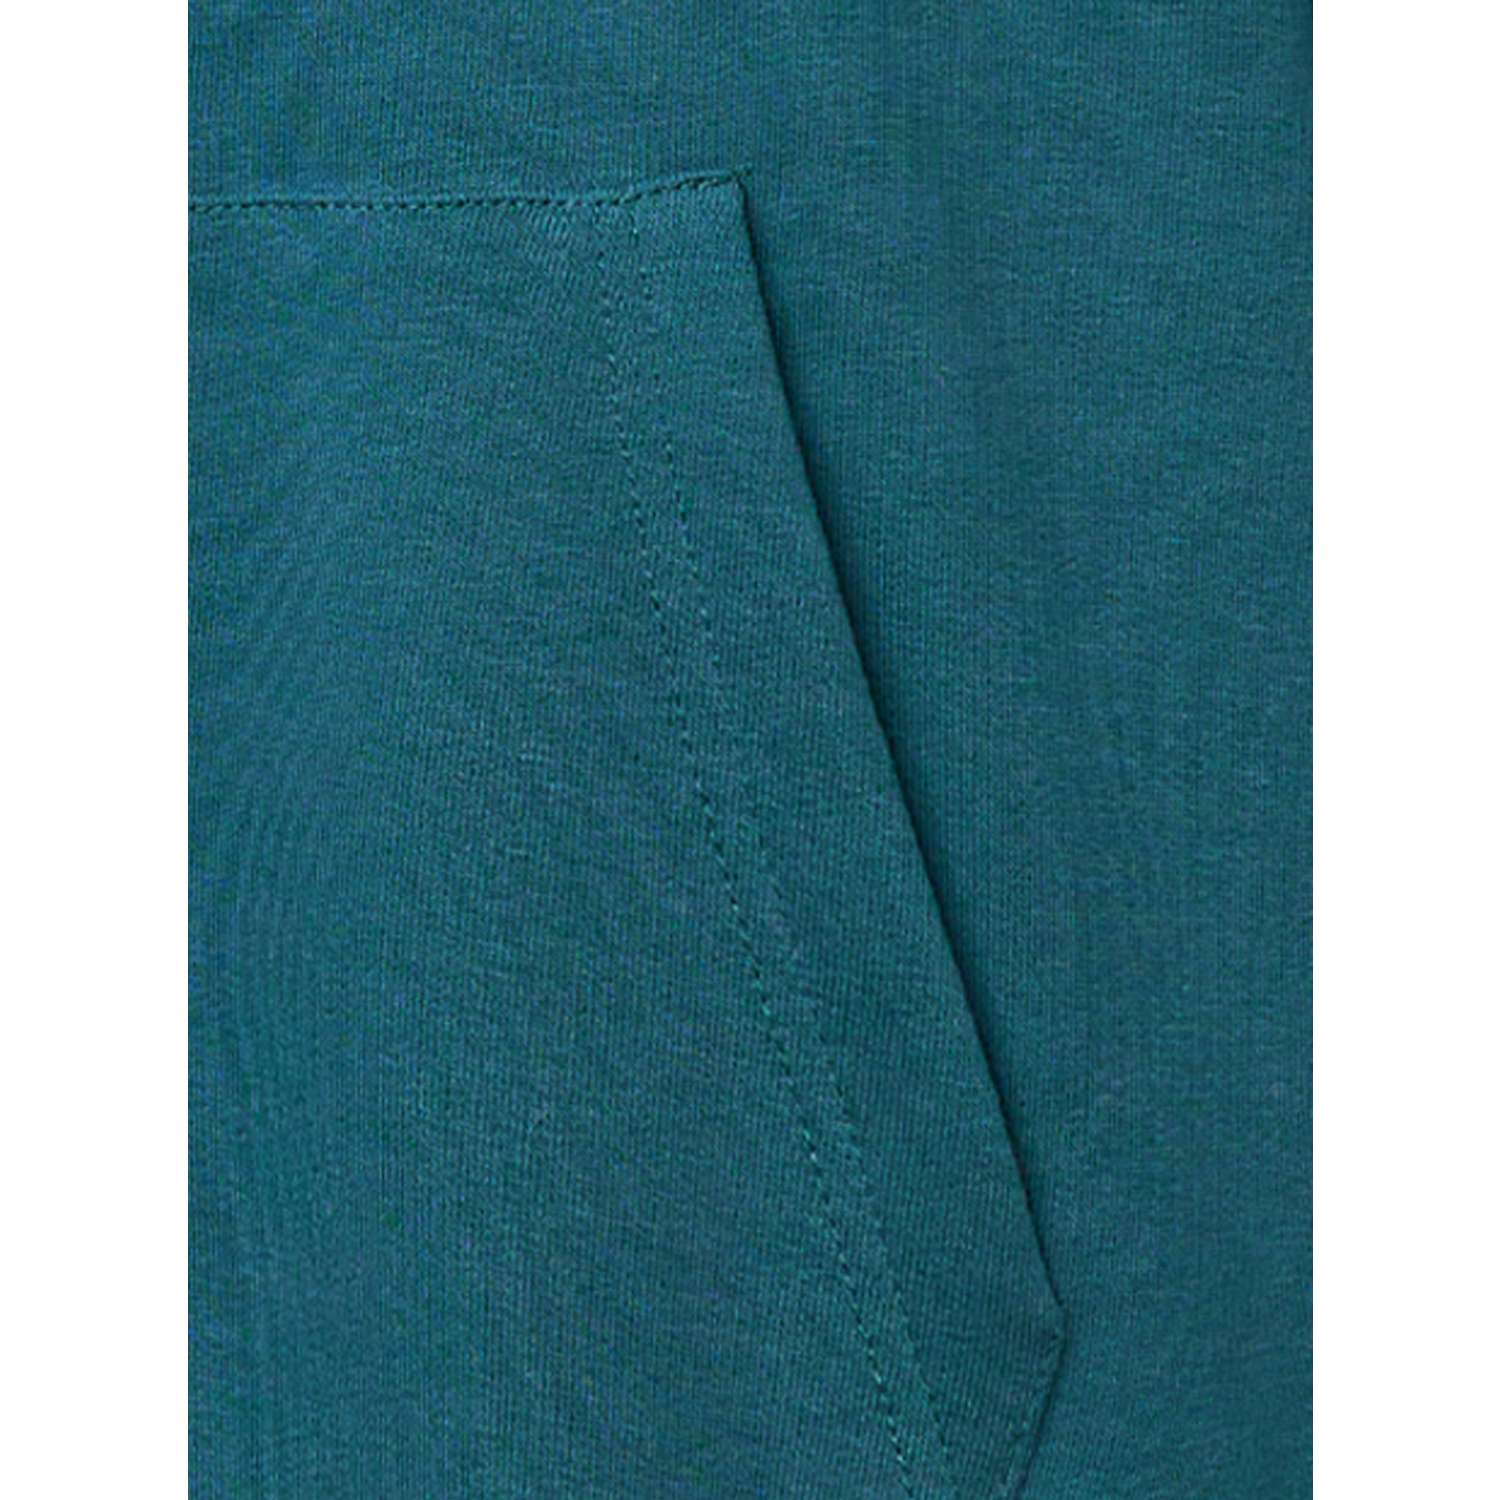 Спортивный костюм Frutto Rosso FRH15134/Сине-зеленый - фото 14